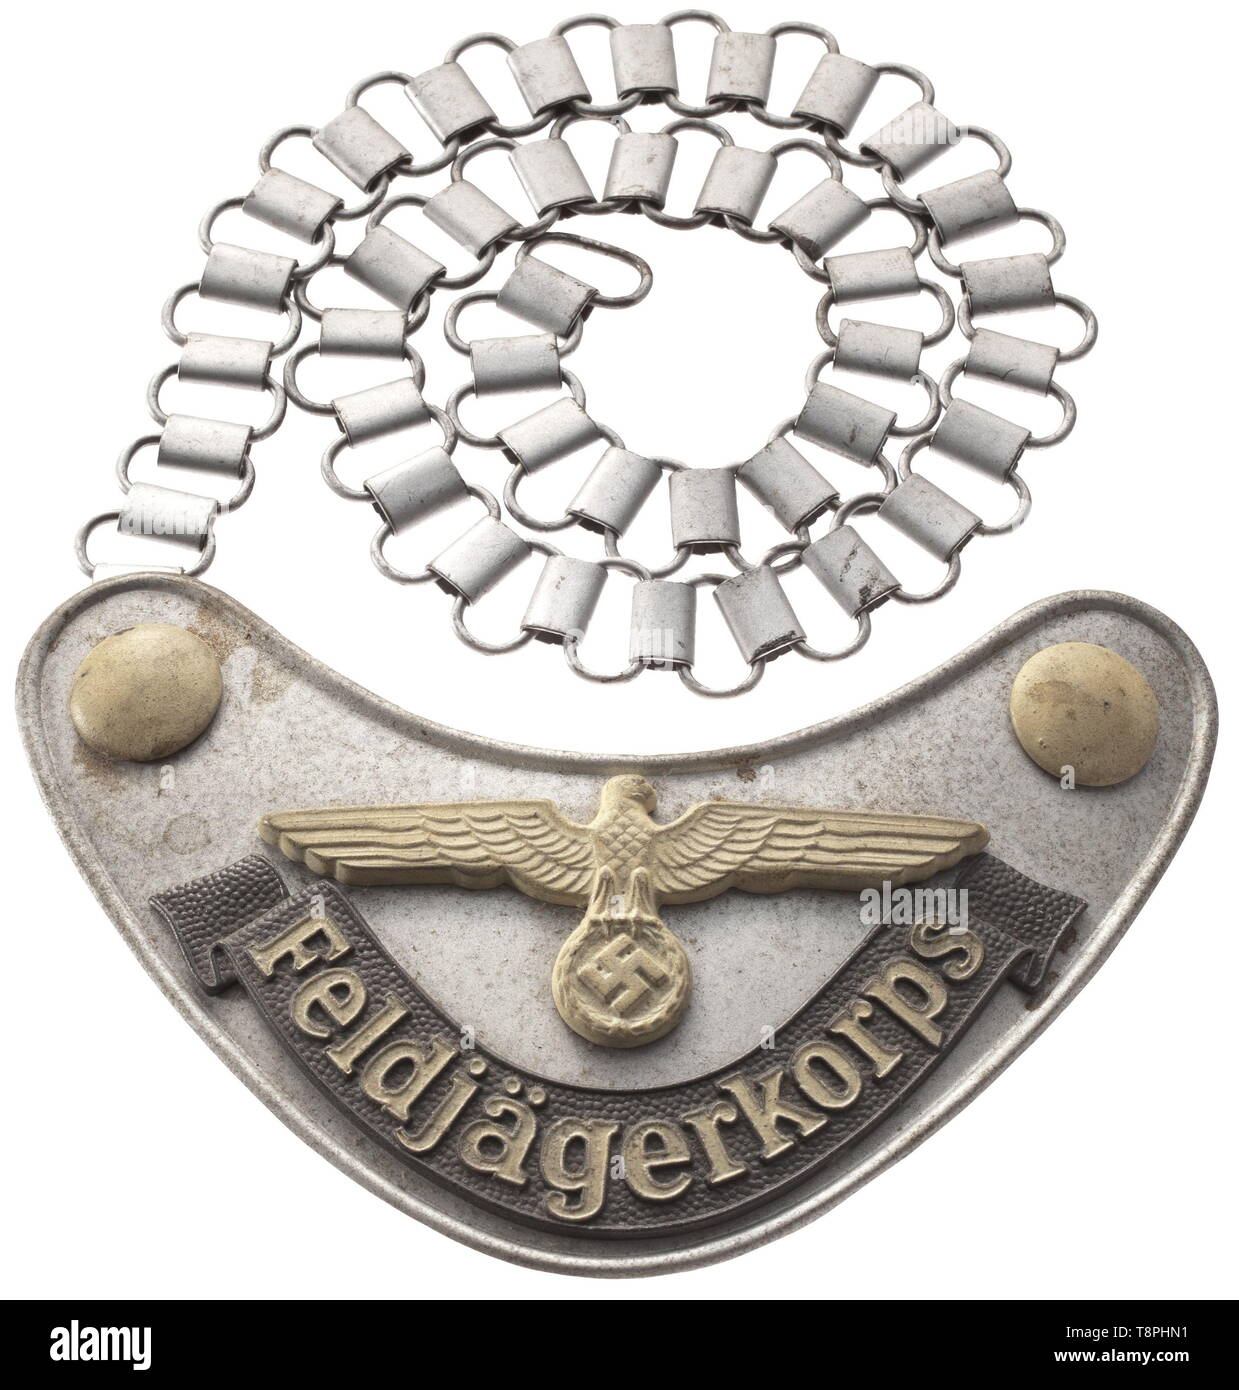 Un 'Feldjägerkorps gorget' de la Wehrmacht en el tipo a partir de 1944, el escudo de hierro lacado color Plata con gris aplicada bandeau 'Feldjägerkorps'. La inscripción, National Eagle y botones en las esquinas resaltadas en la pintura luminiscente. Camisa de cartón marrón, cadena de hierro. Un raro, no usado gorget ordenadamente con detalles en relieve. Marcas de almacenamiento. El cuerpo Feldjäger fue planteada en 1944 para prevenir la deserción en las filas, y era relativamente independiente y podría llevar a cabo ejecuciones sumarias de soldados condenados. histórico, histórico, del siglo XX, sólo Editorial-Use Foto de stock